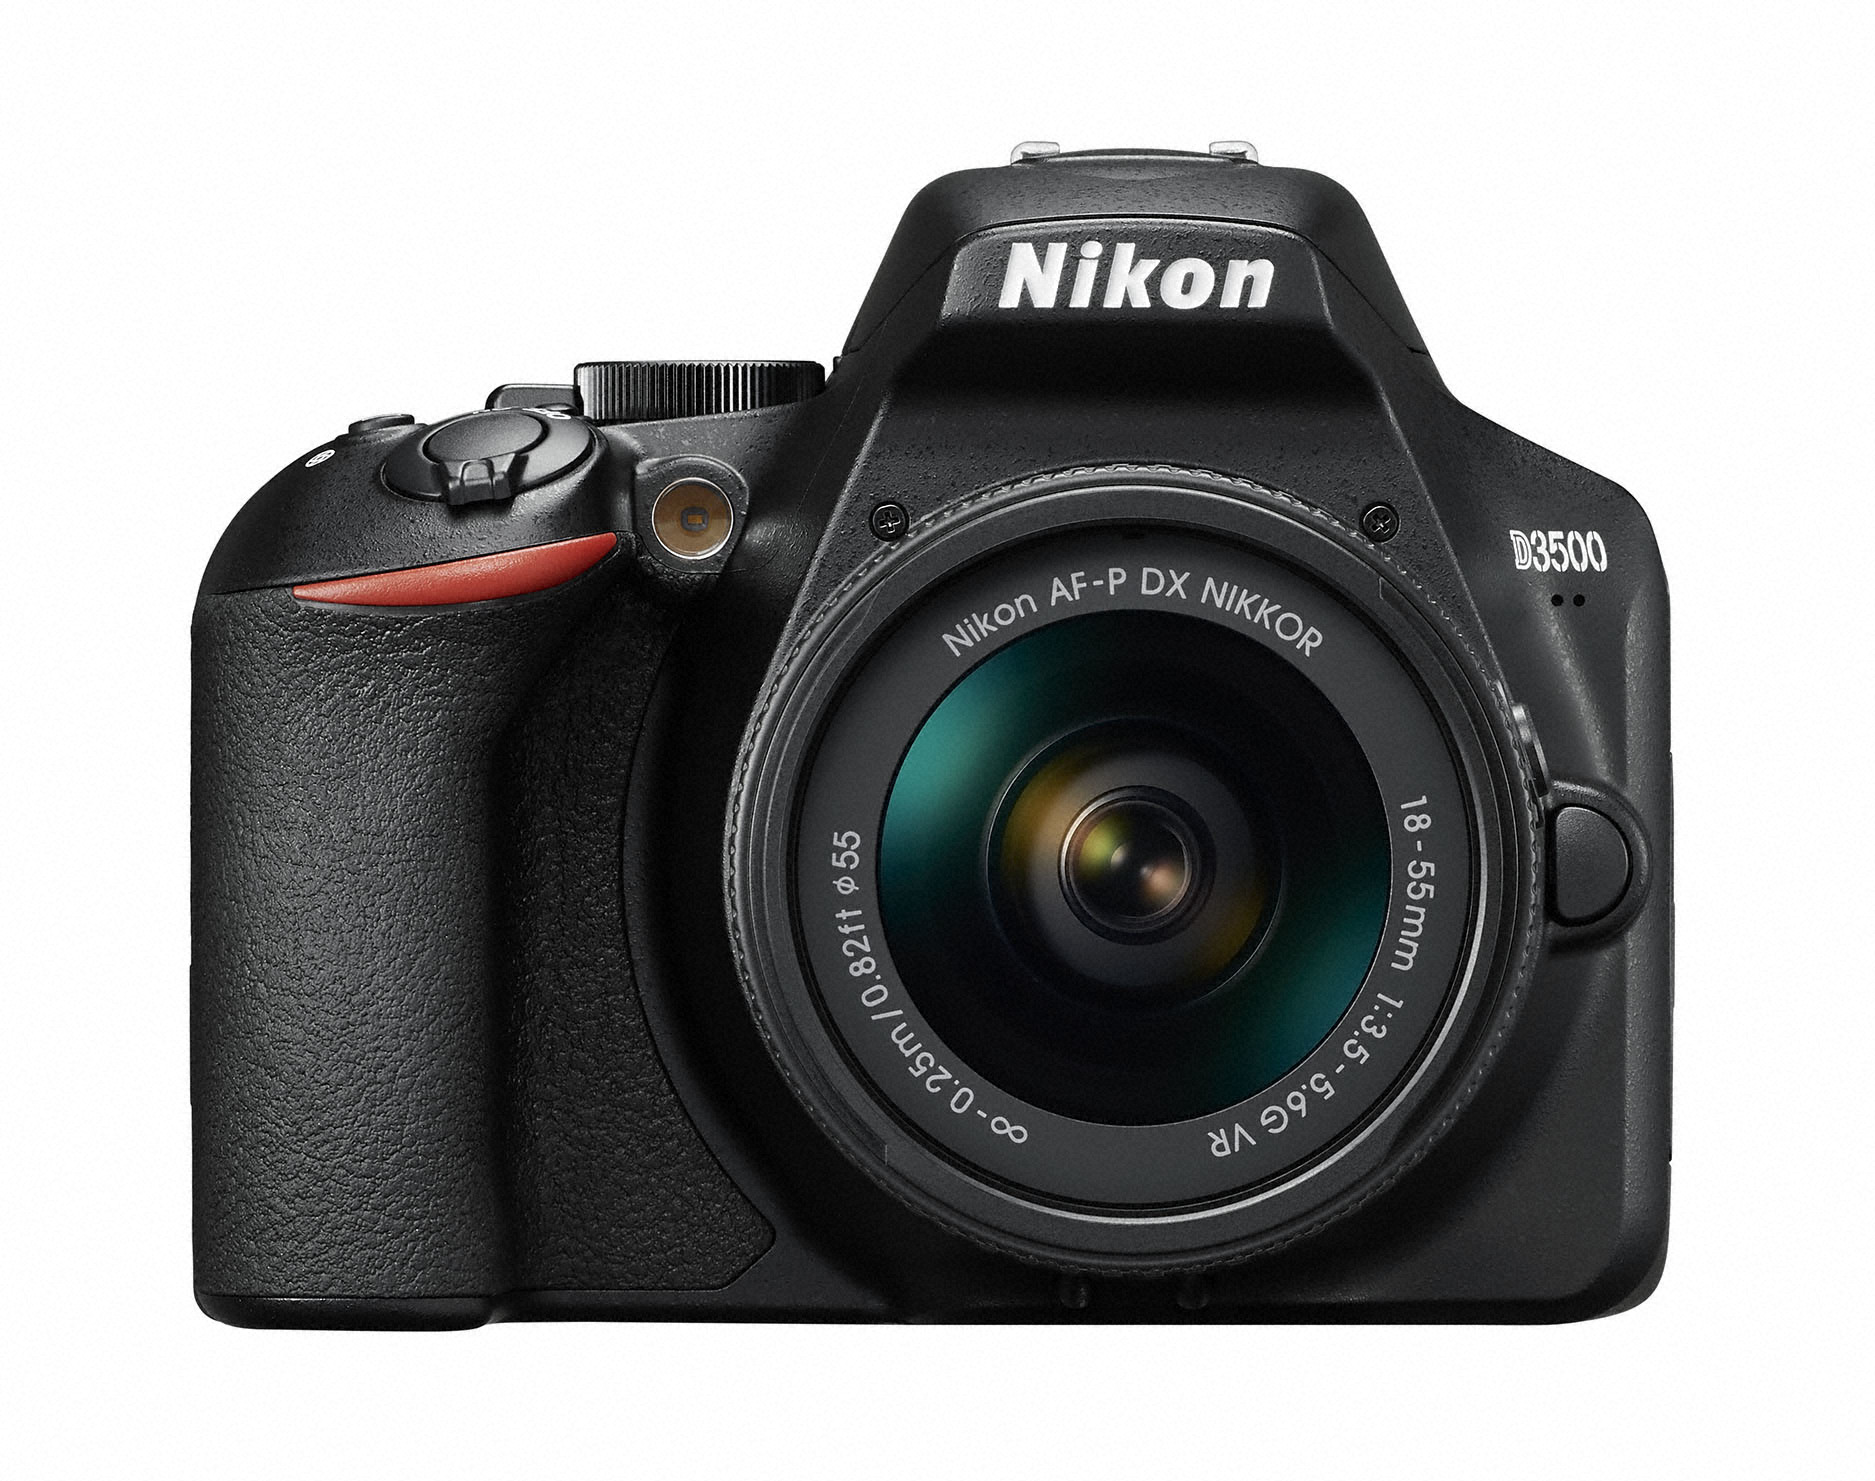 니콘의 DSLR 카메라 엔트리 모델 신제품 D3500 / 사진제공 니콘이미징코리아